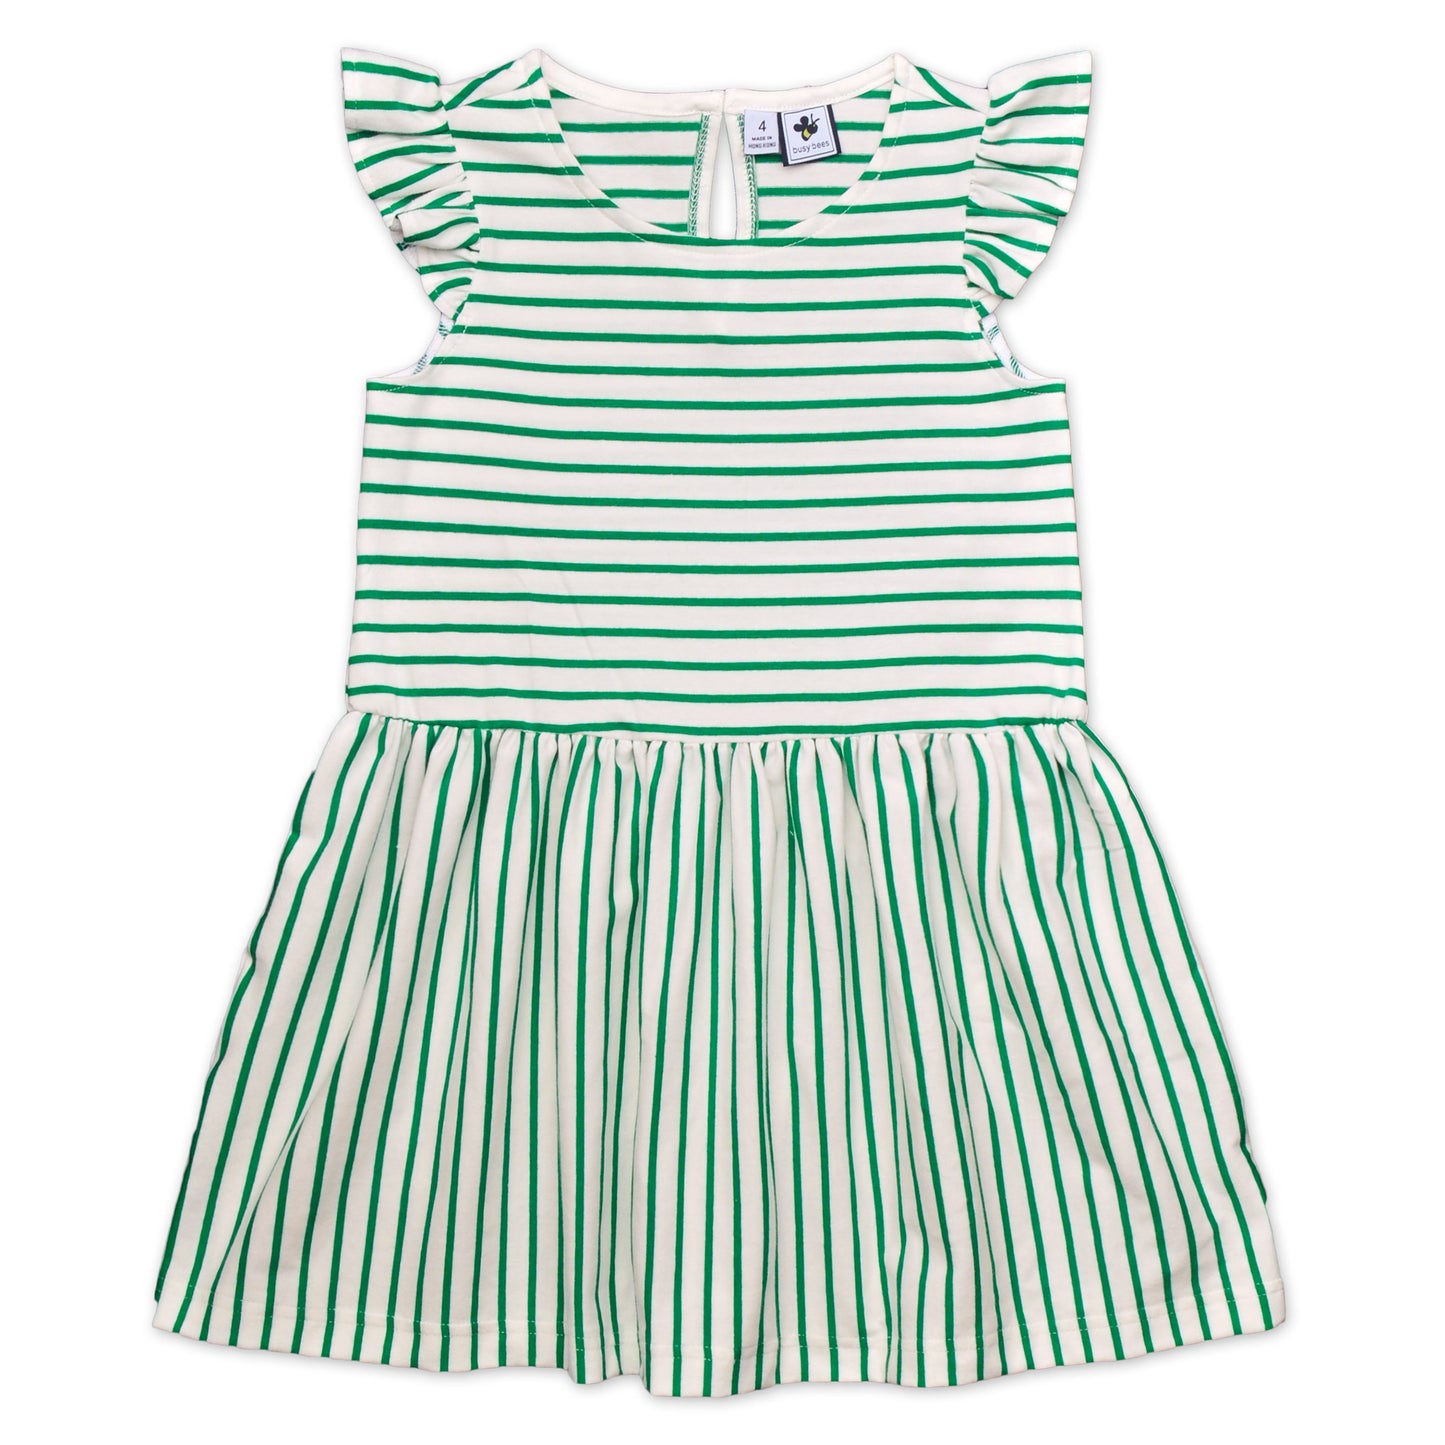 Penelope Girls Dropwaist Dress Green Stripe